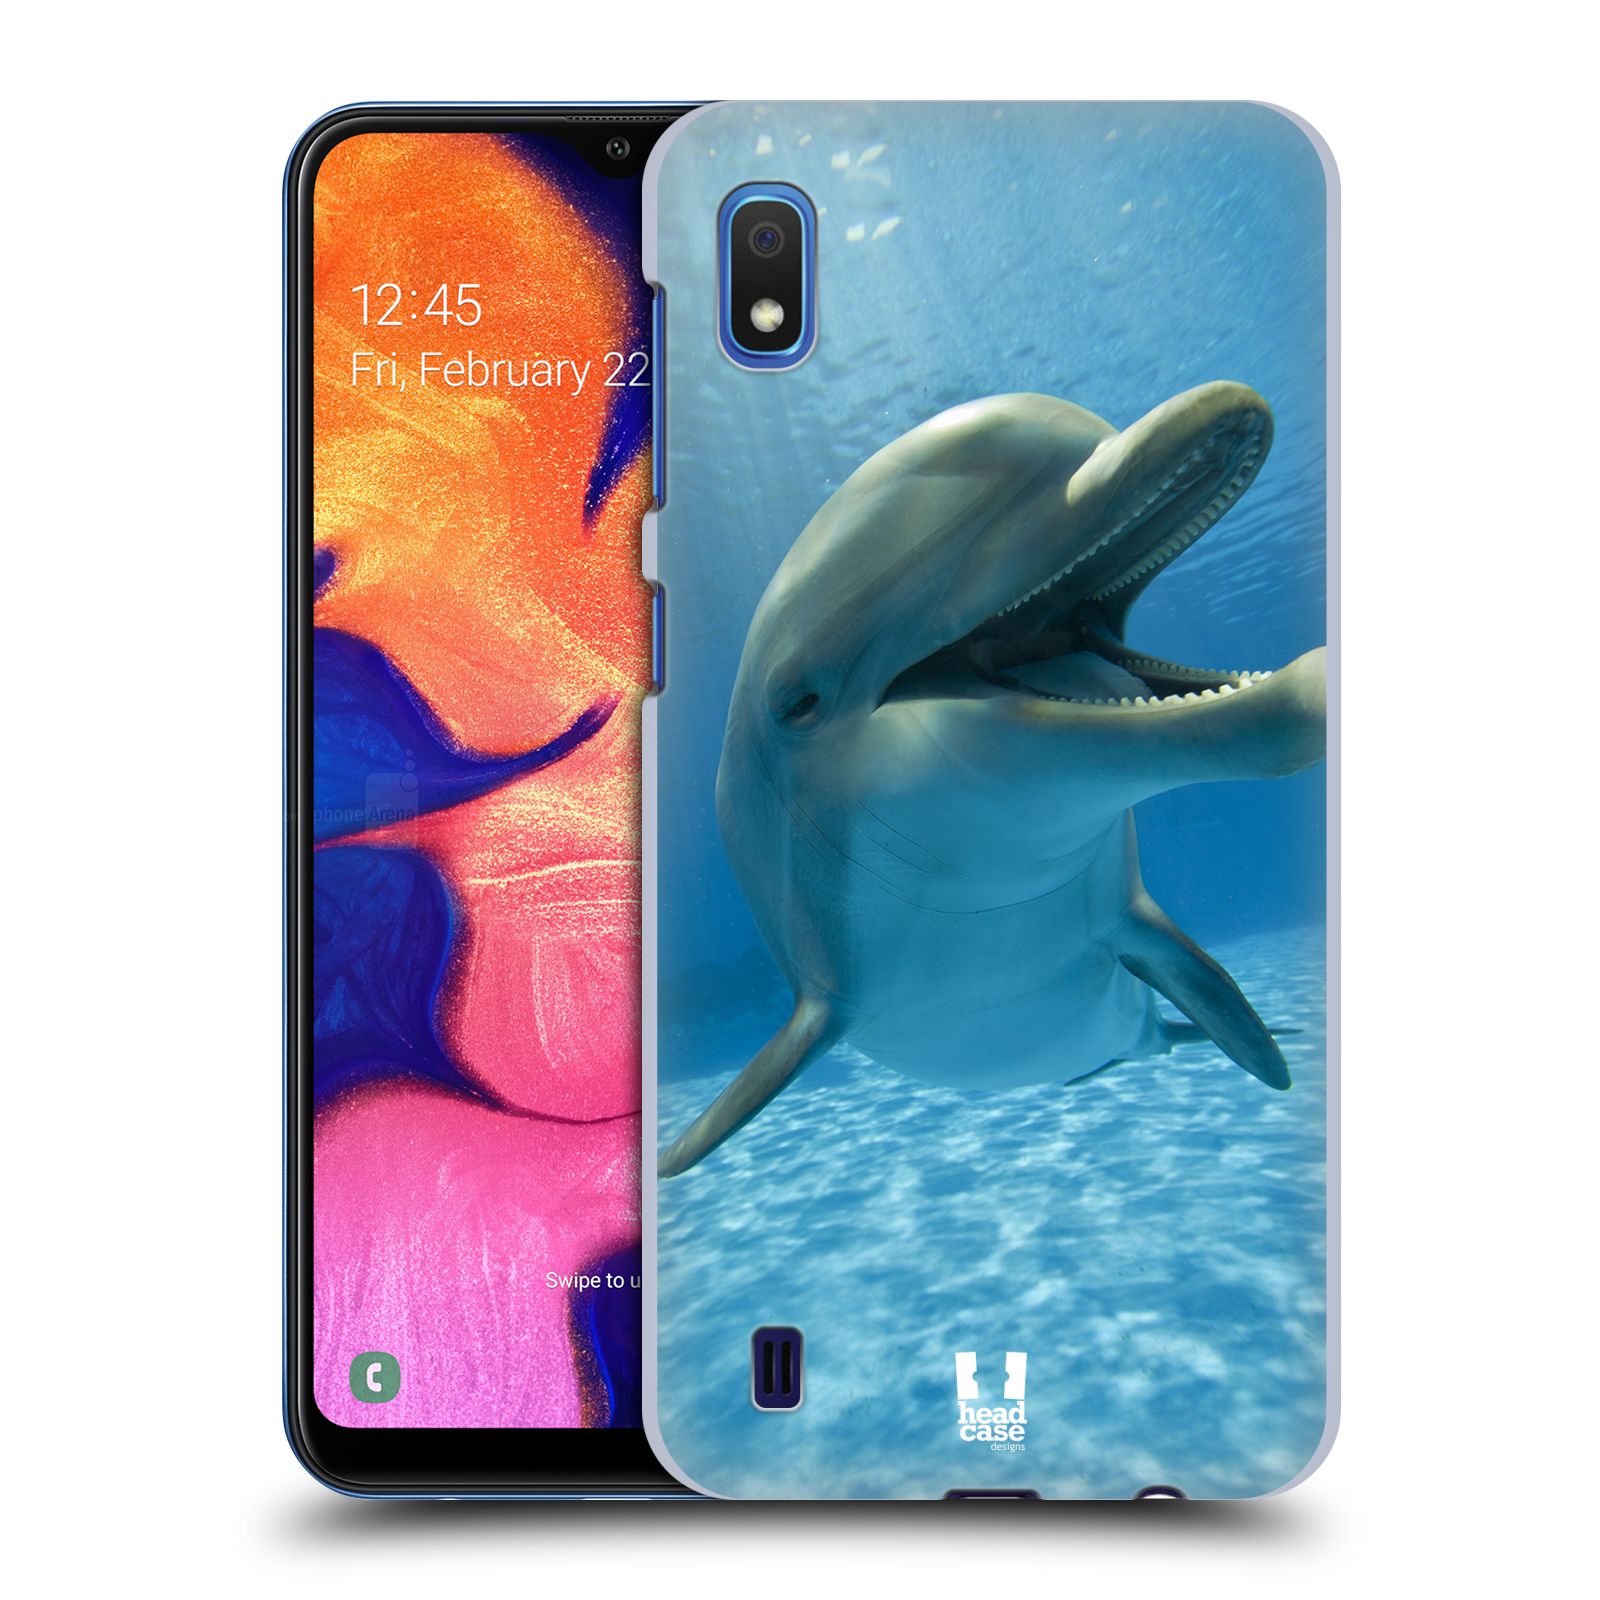 Zadní obal pro mobil Samsung Galaxy A10 - HEAD CASE - Svět zvířat delfín v moři